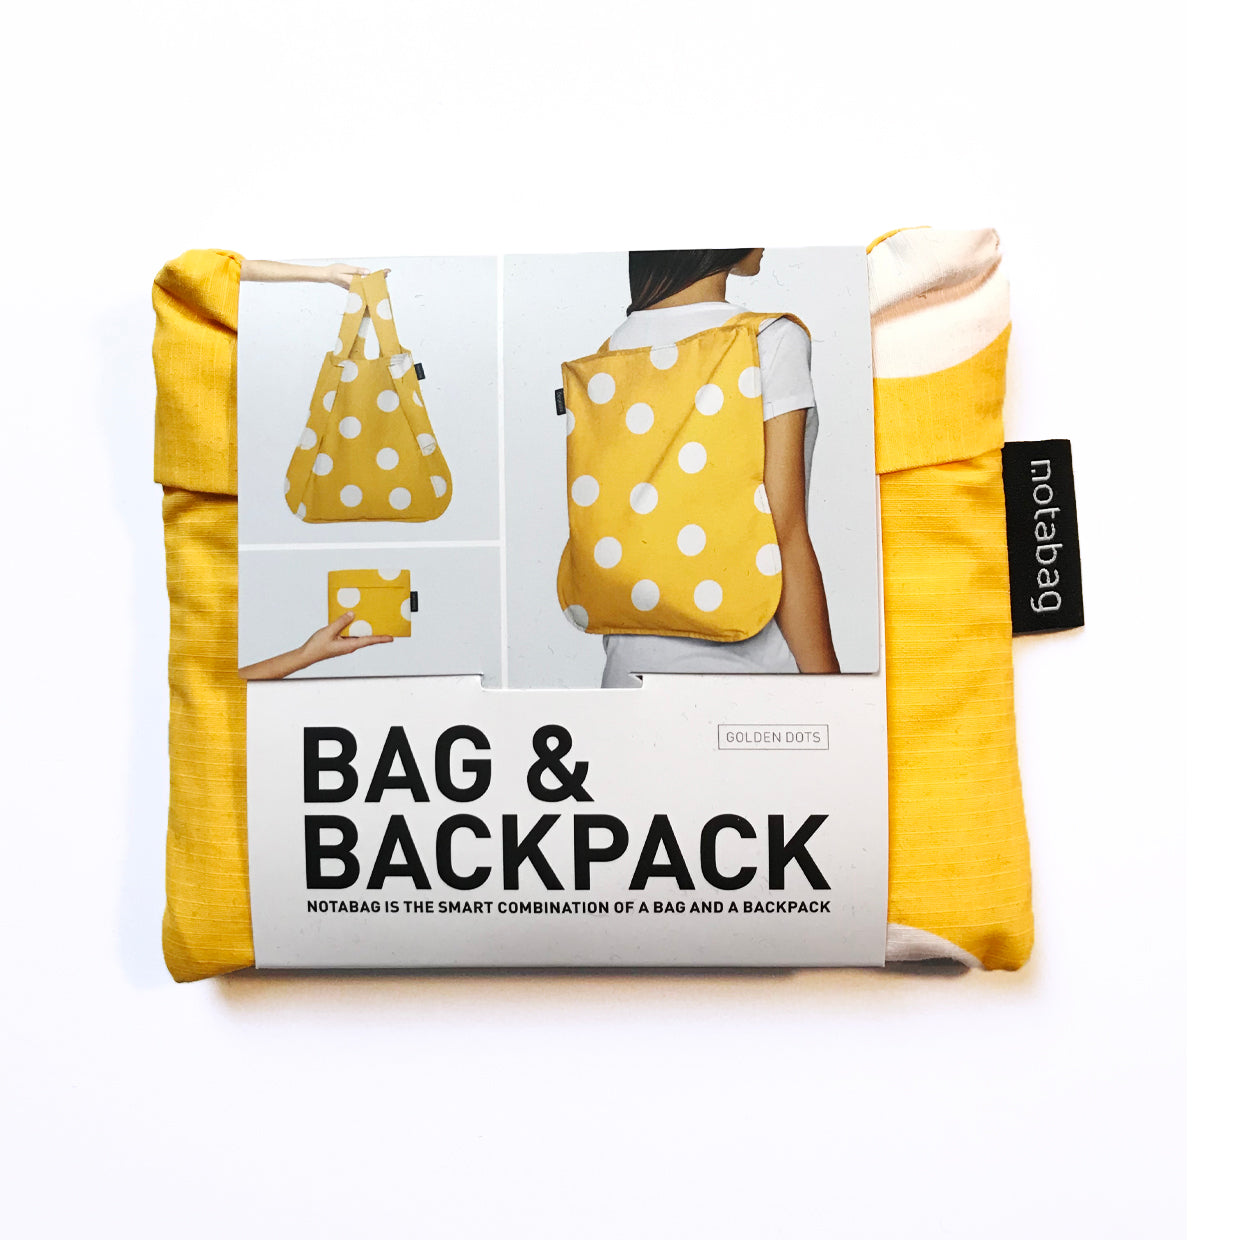 notabag: bag & backpack